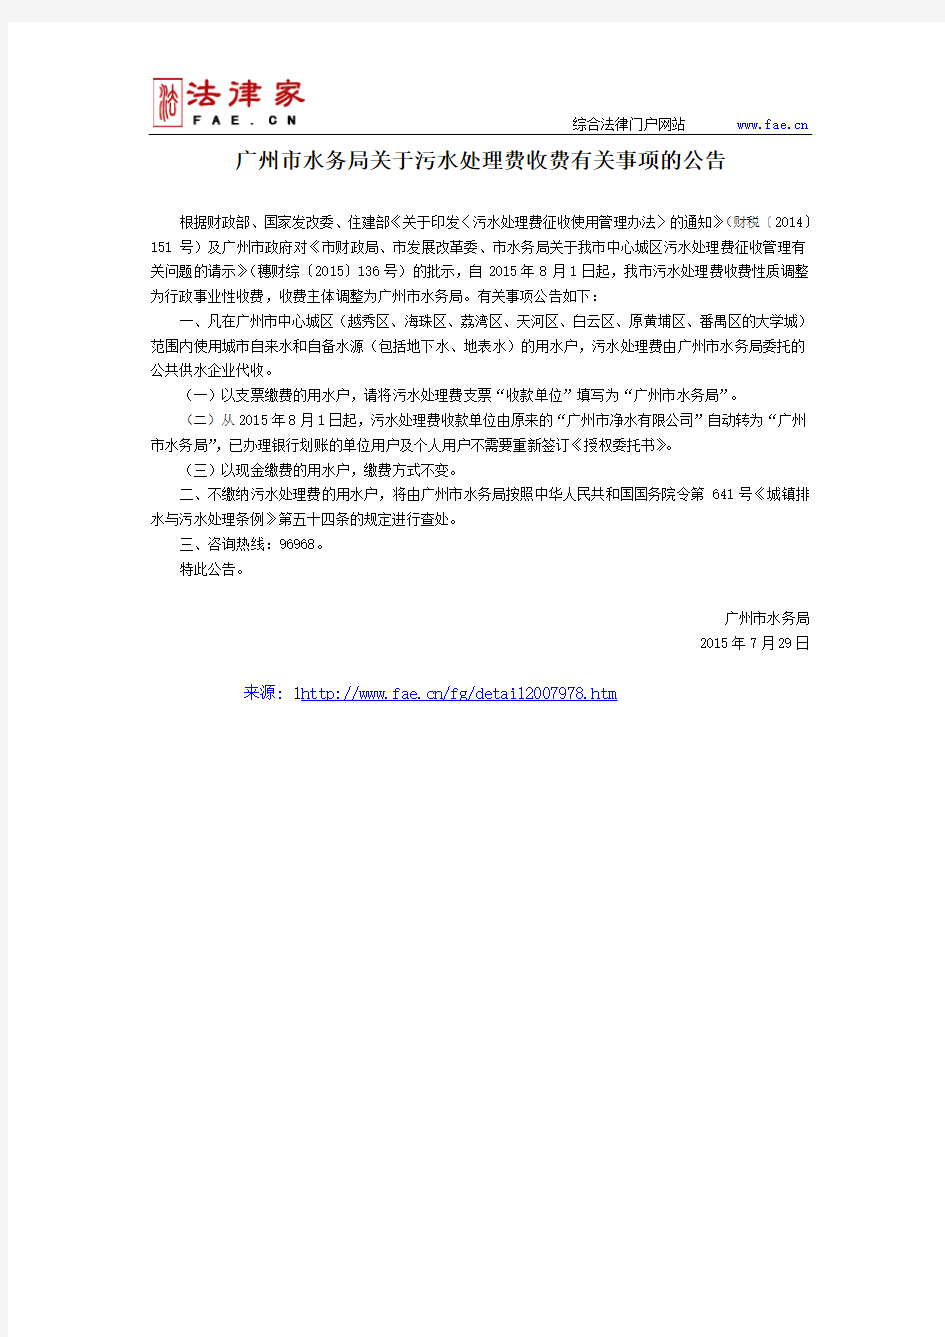 广州市水务局关于污水处理费收费有关事项的公告-地方规范性文件